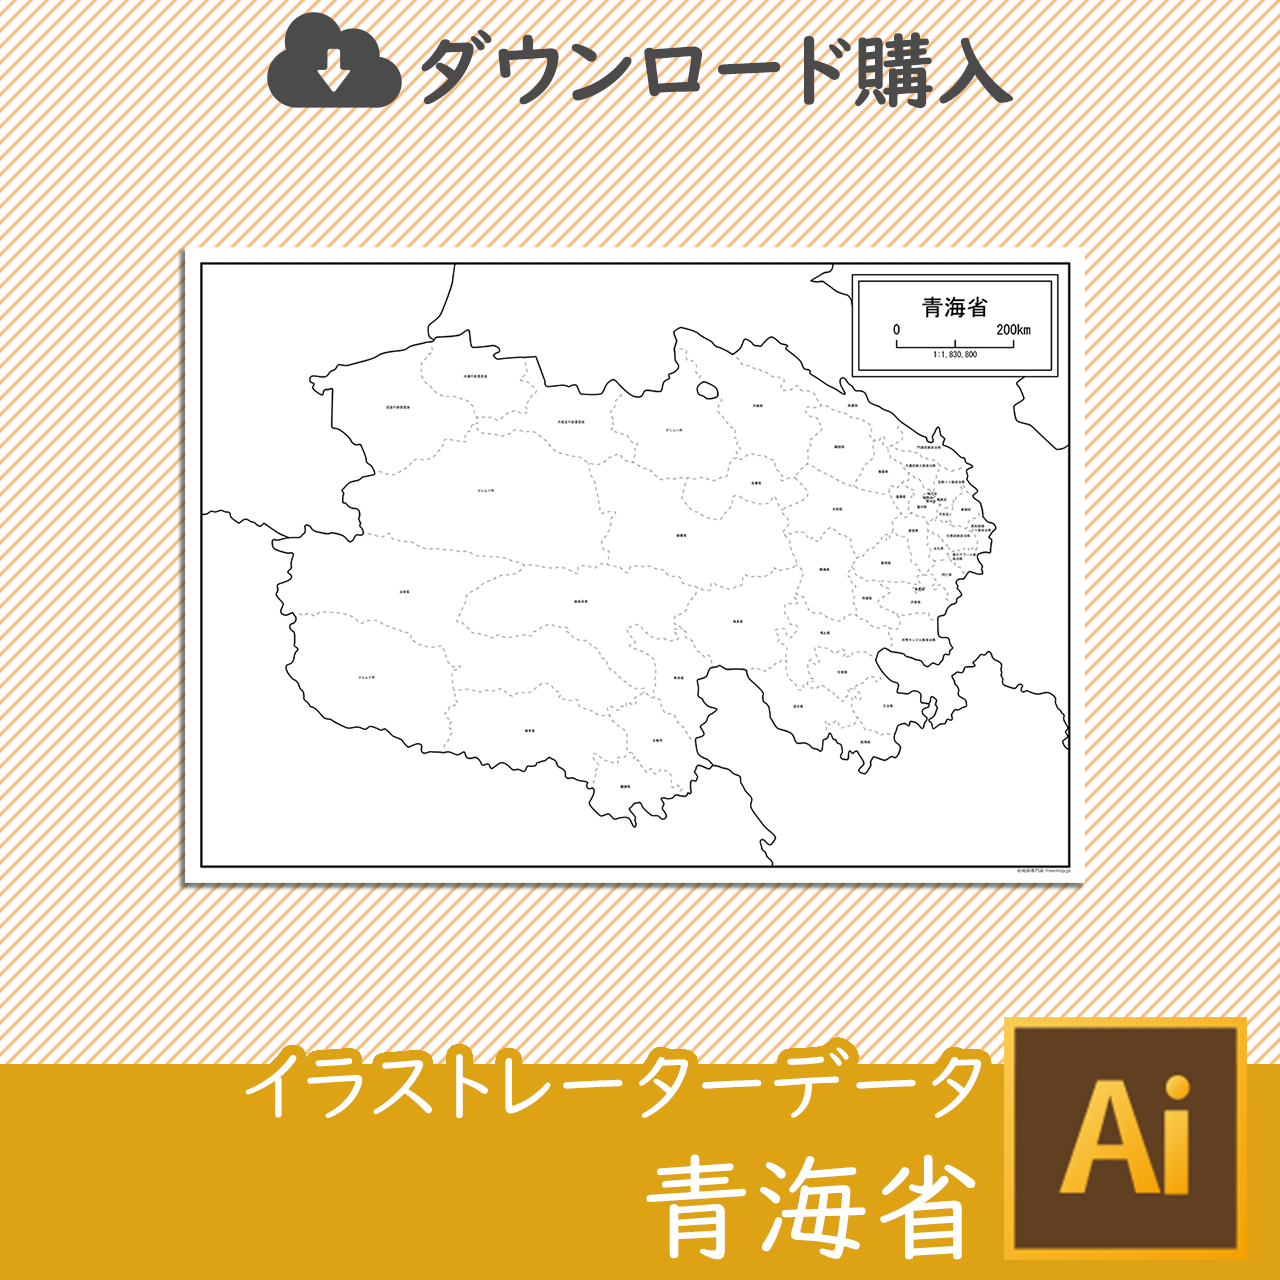 青海省の白地図データのサムネイル画像